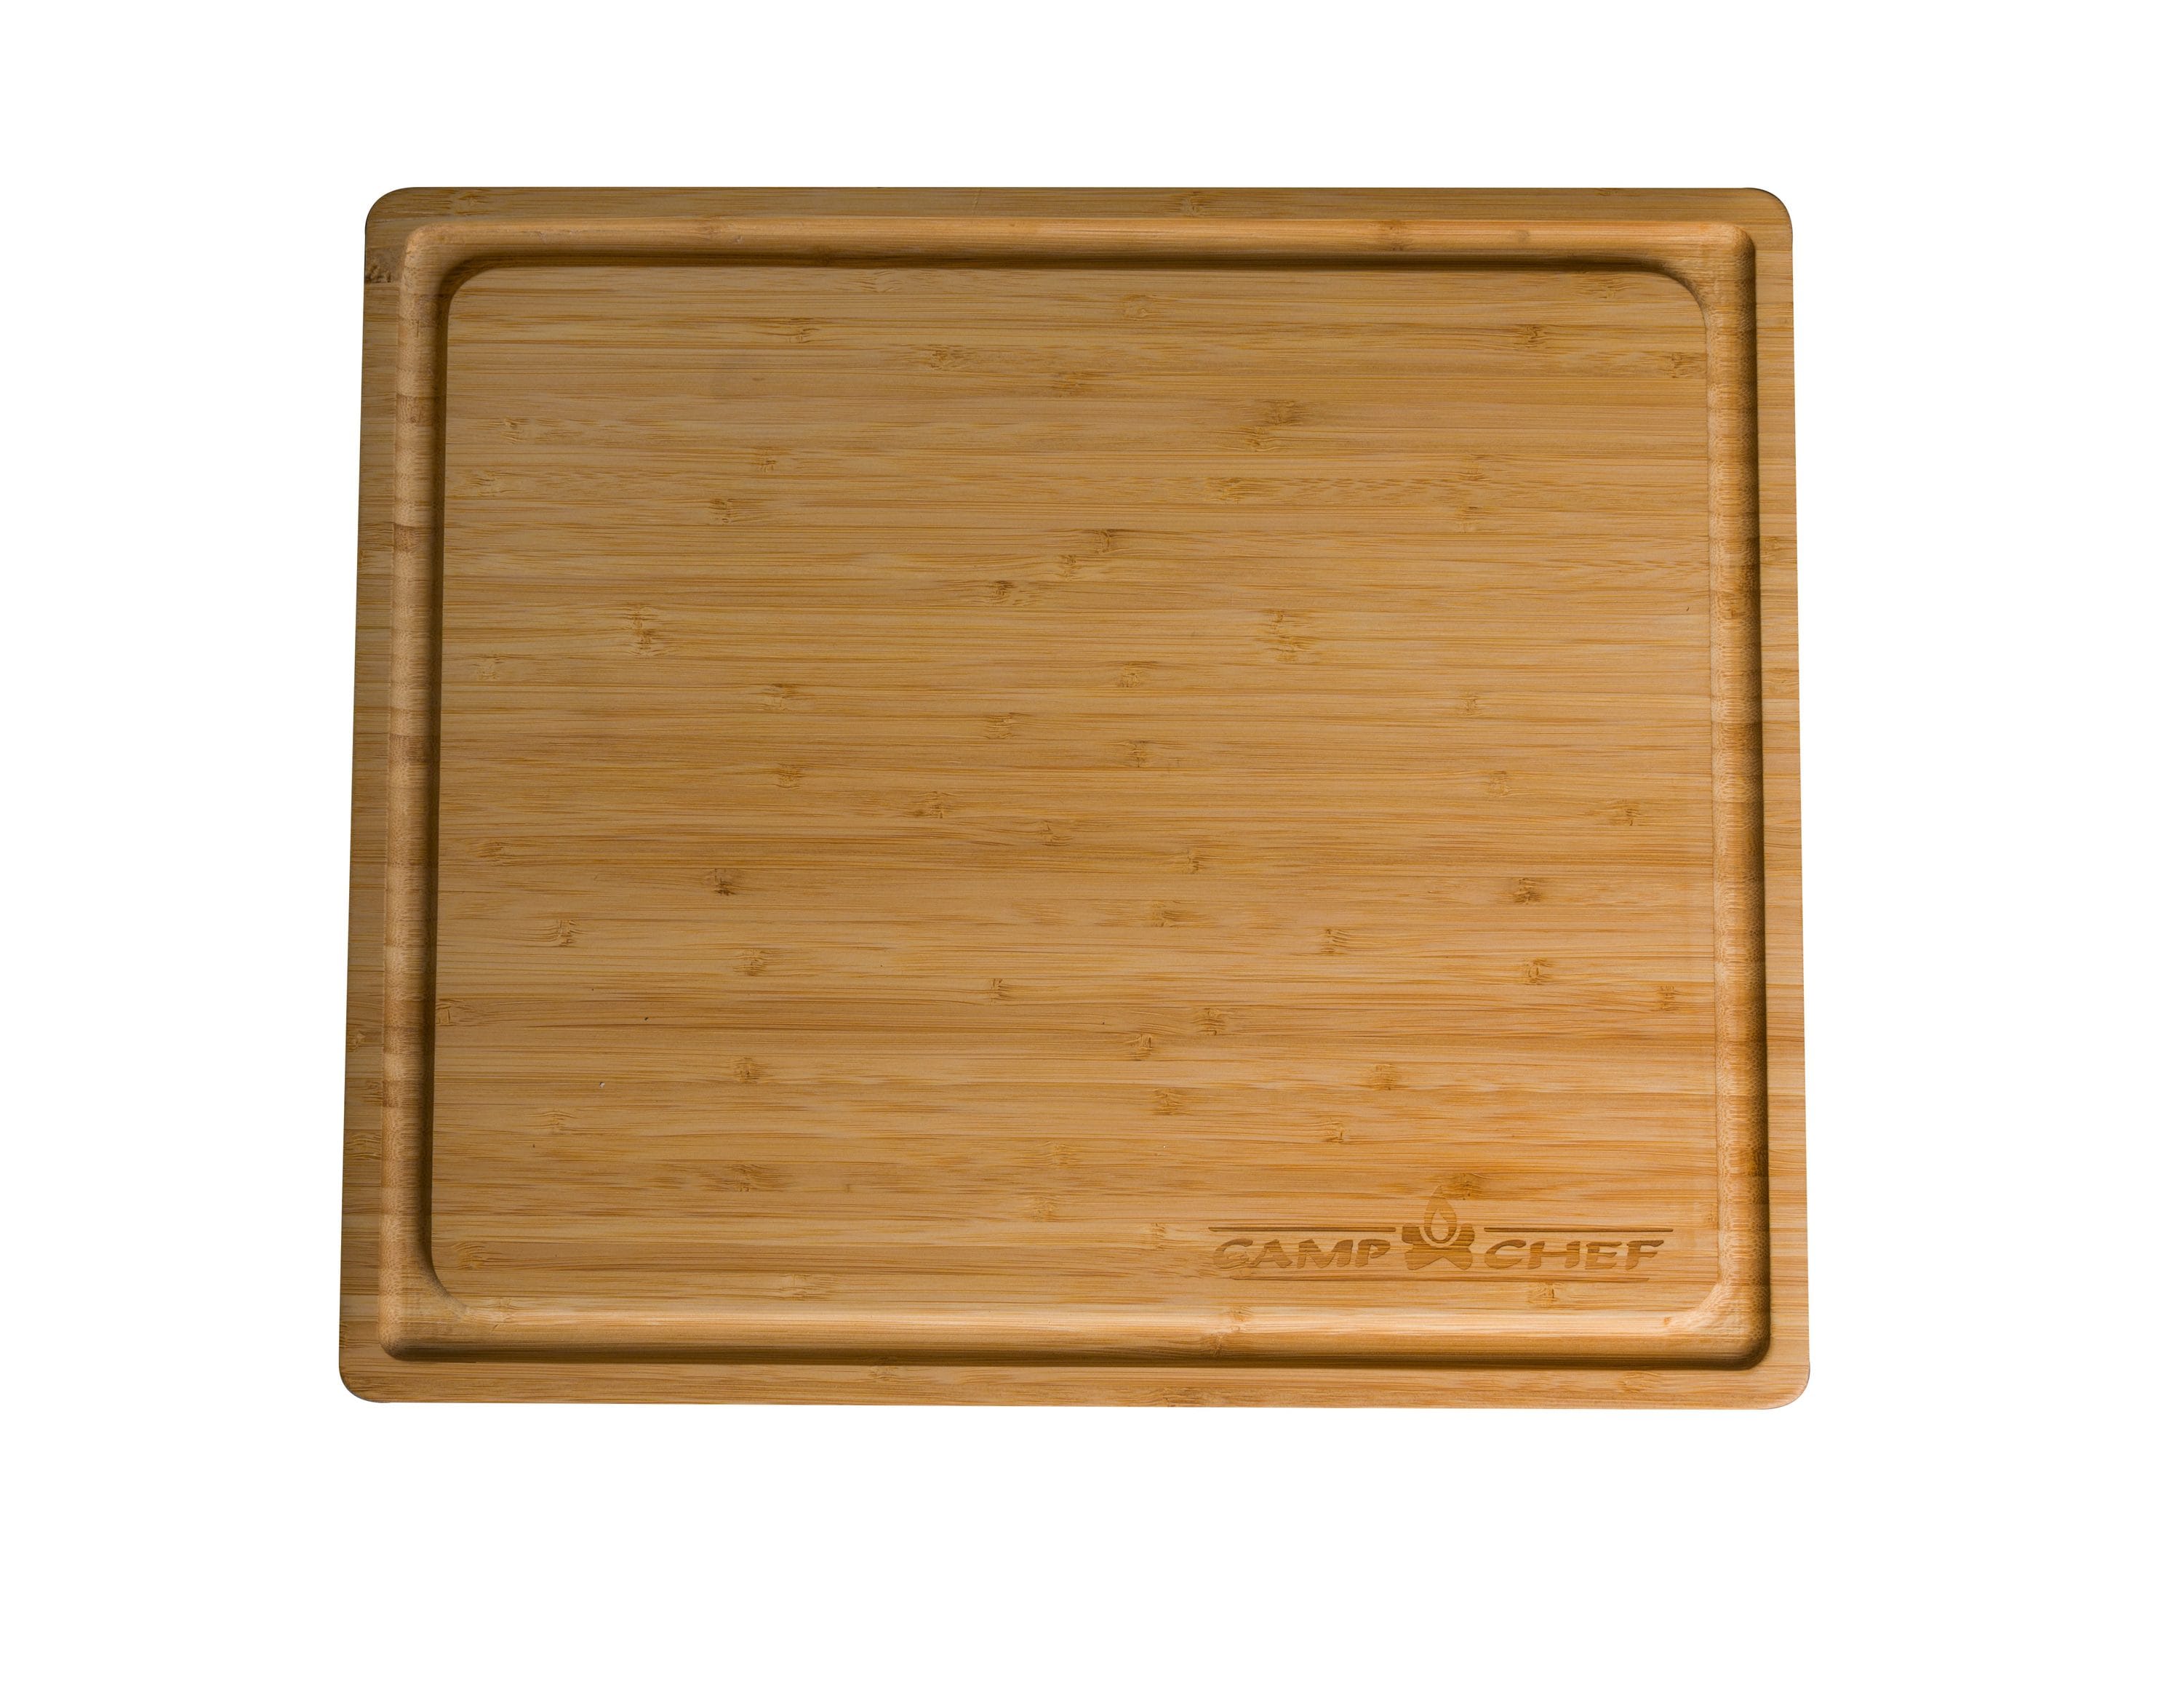 Kona Thin Cutting Board - Bamboo